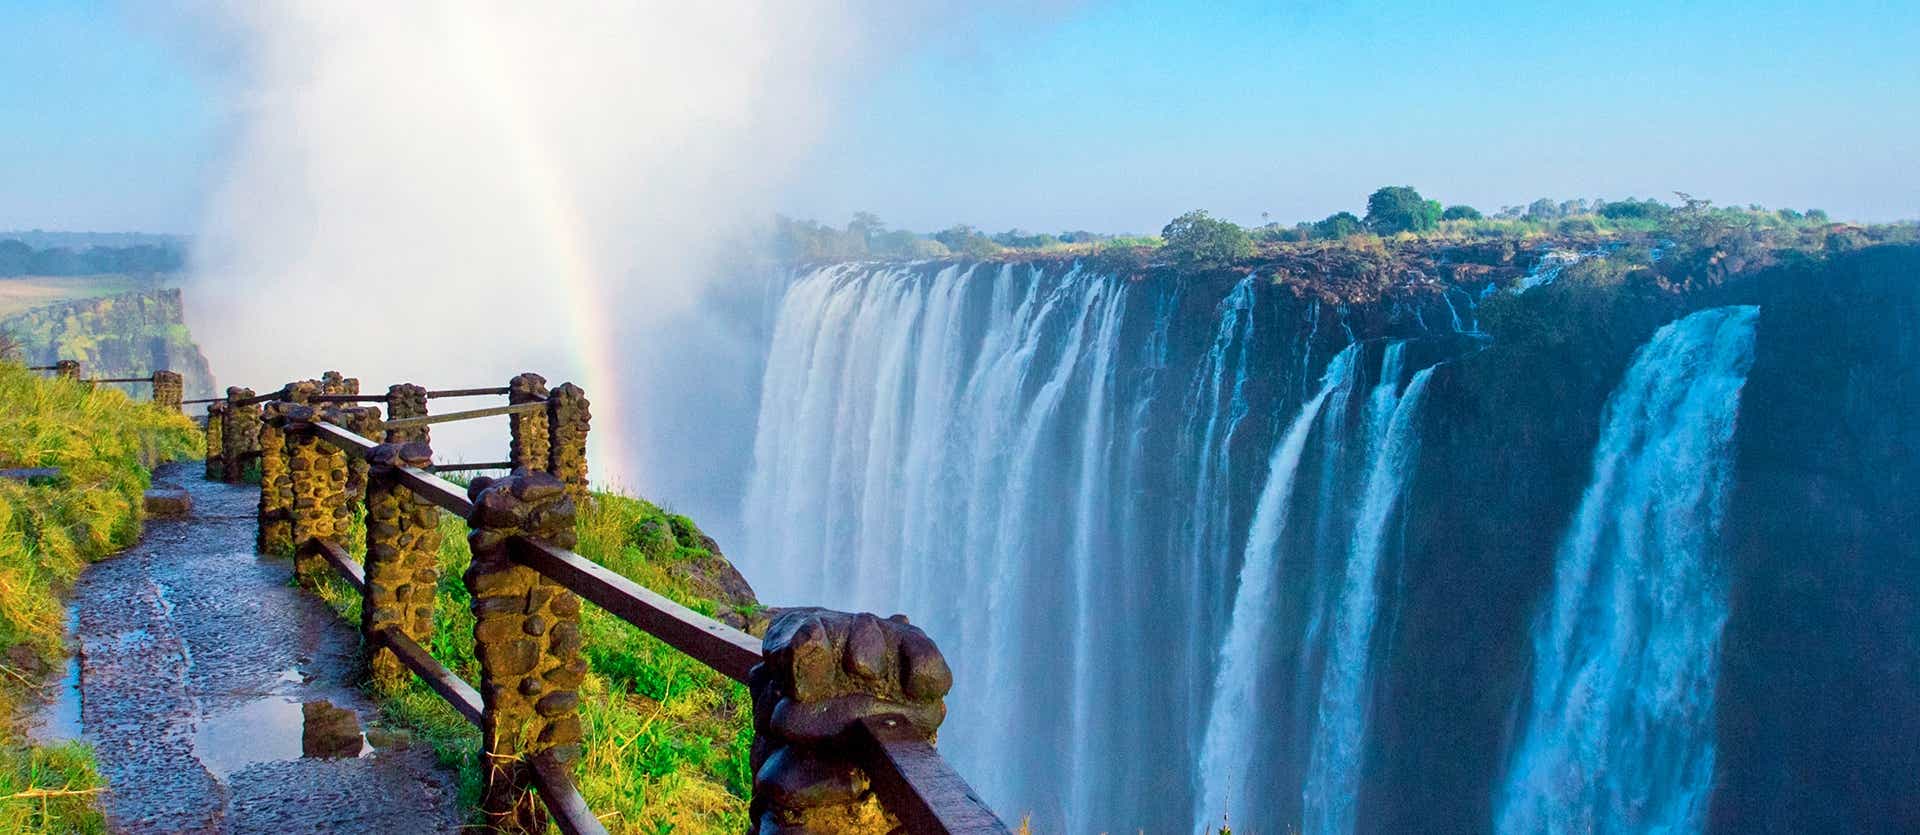 Victoria Falls <span class="iconos separador"></span> Zimbabwe